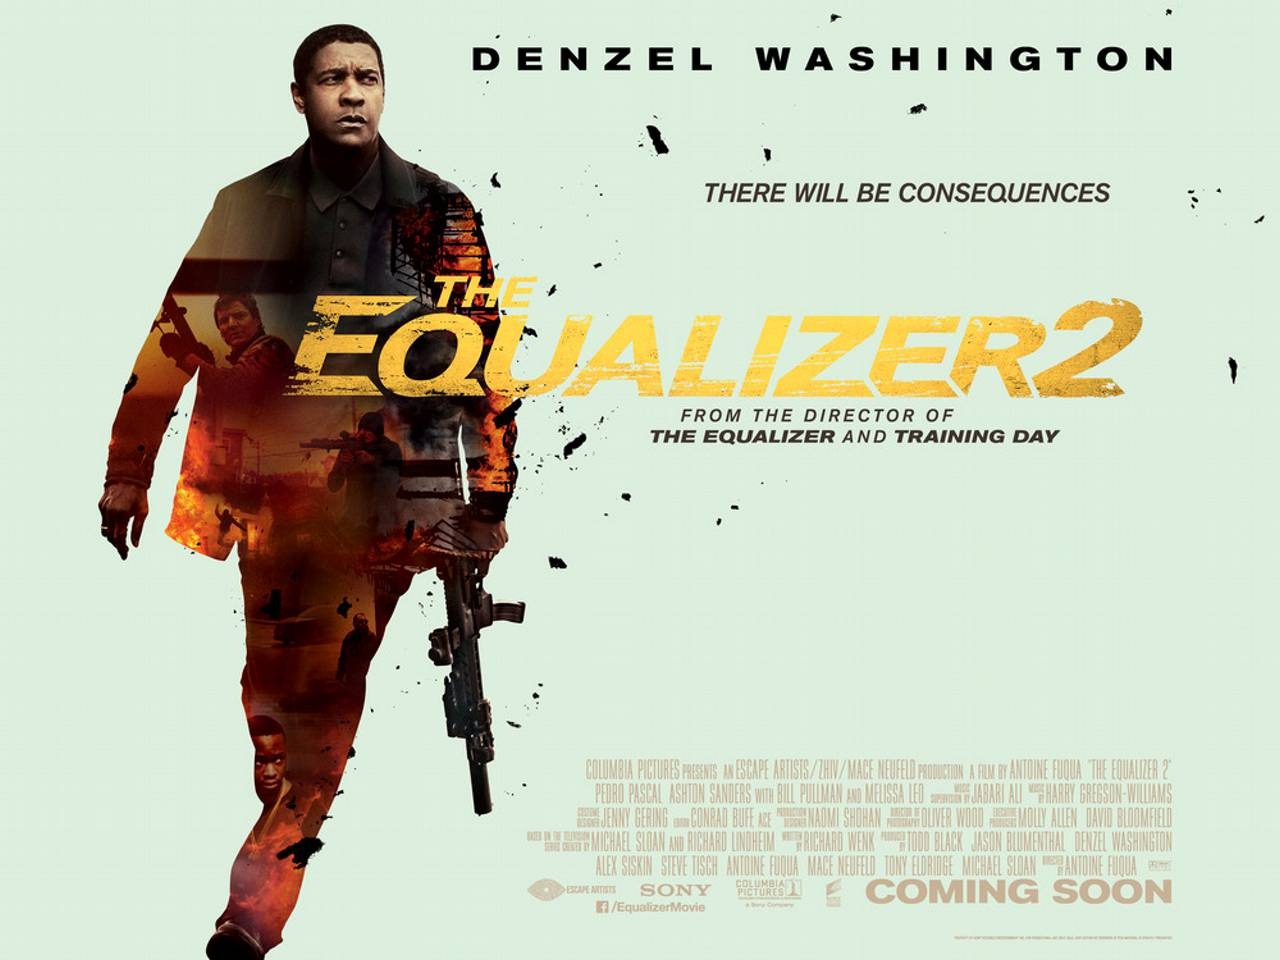 Equalizer 2. Дензел Вашингтон Великий уравнитель 2. Дензел Вашингтон уравнитель. Постер Великий уравнитель 2 / the Equalizer 2 (2018). Великий уравнитель 2 Постер.